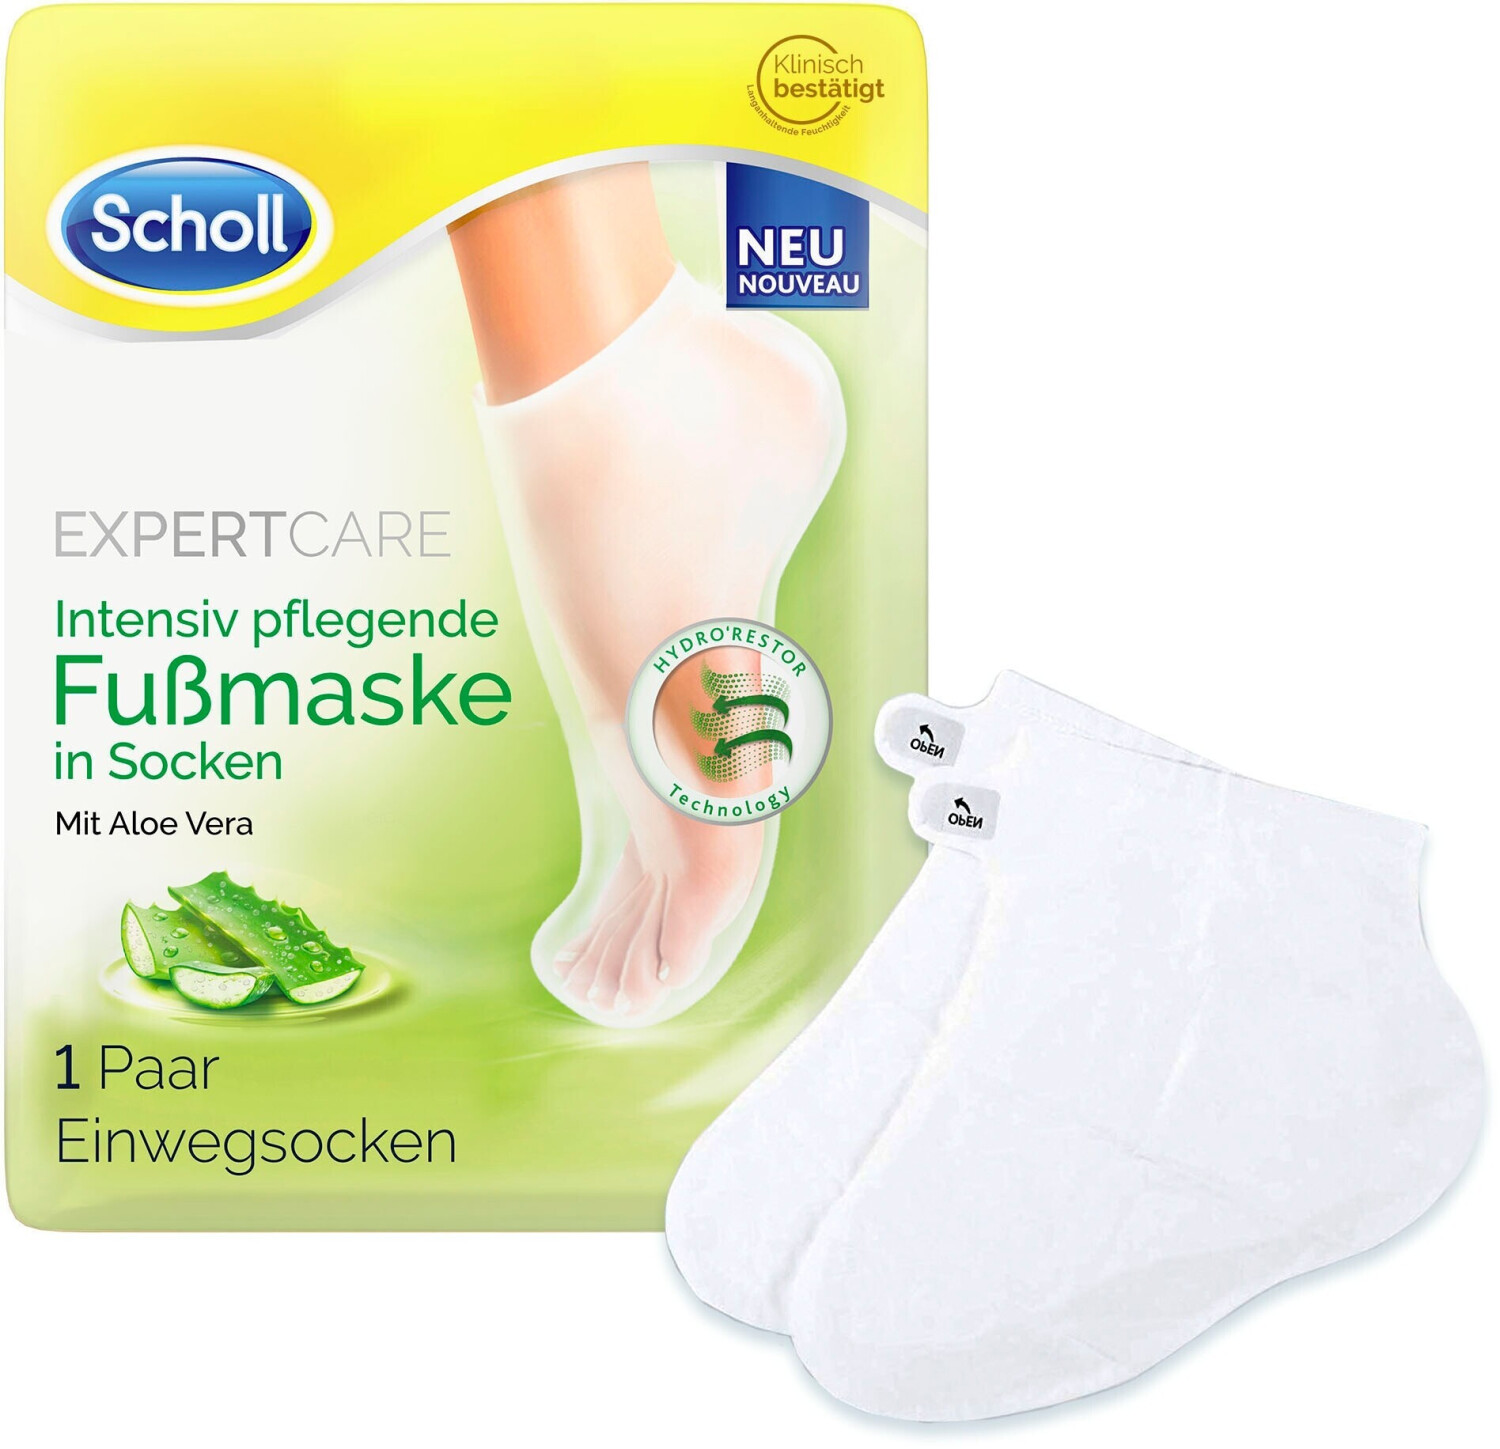 in € | Scholl 4,39 (2Stk.) pflegende Intensiv Fußmaske Socken ab bei Preisvergleich